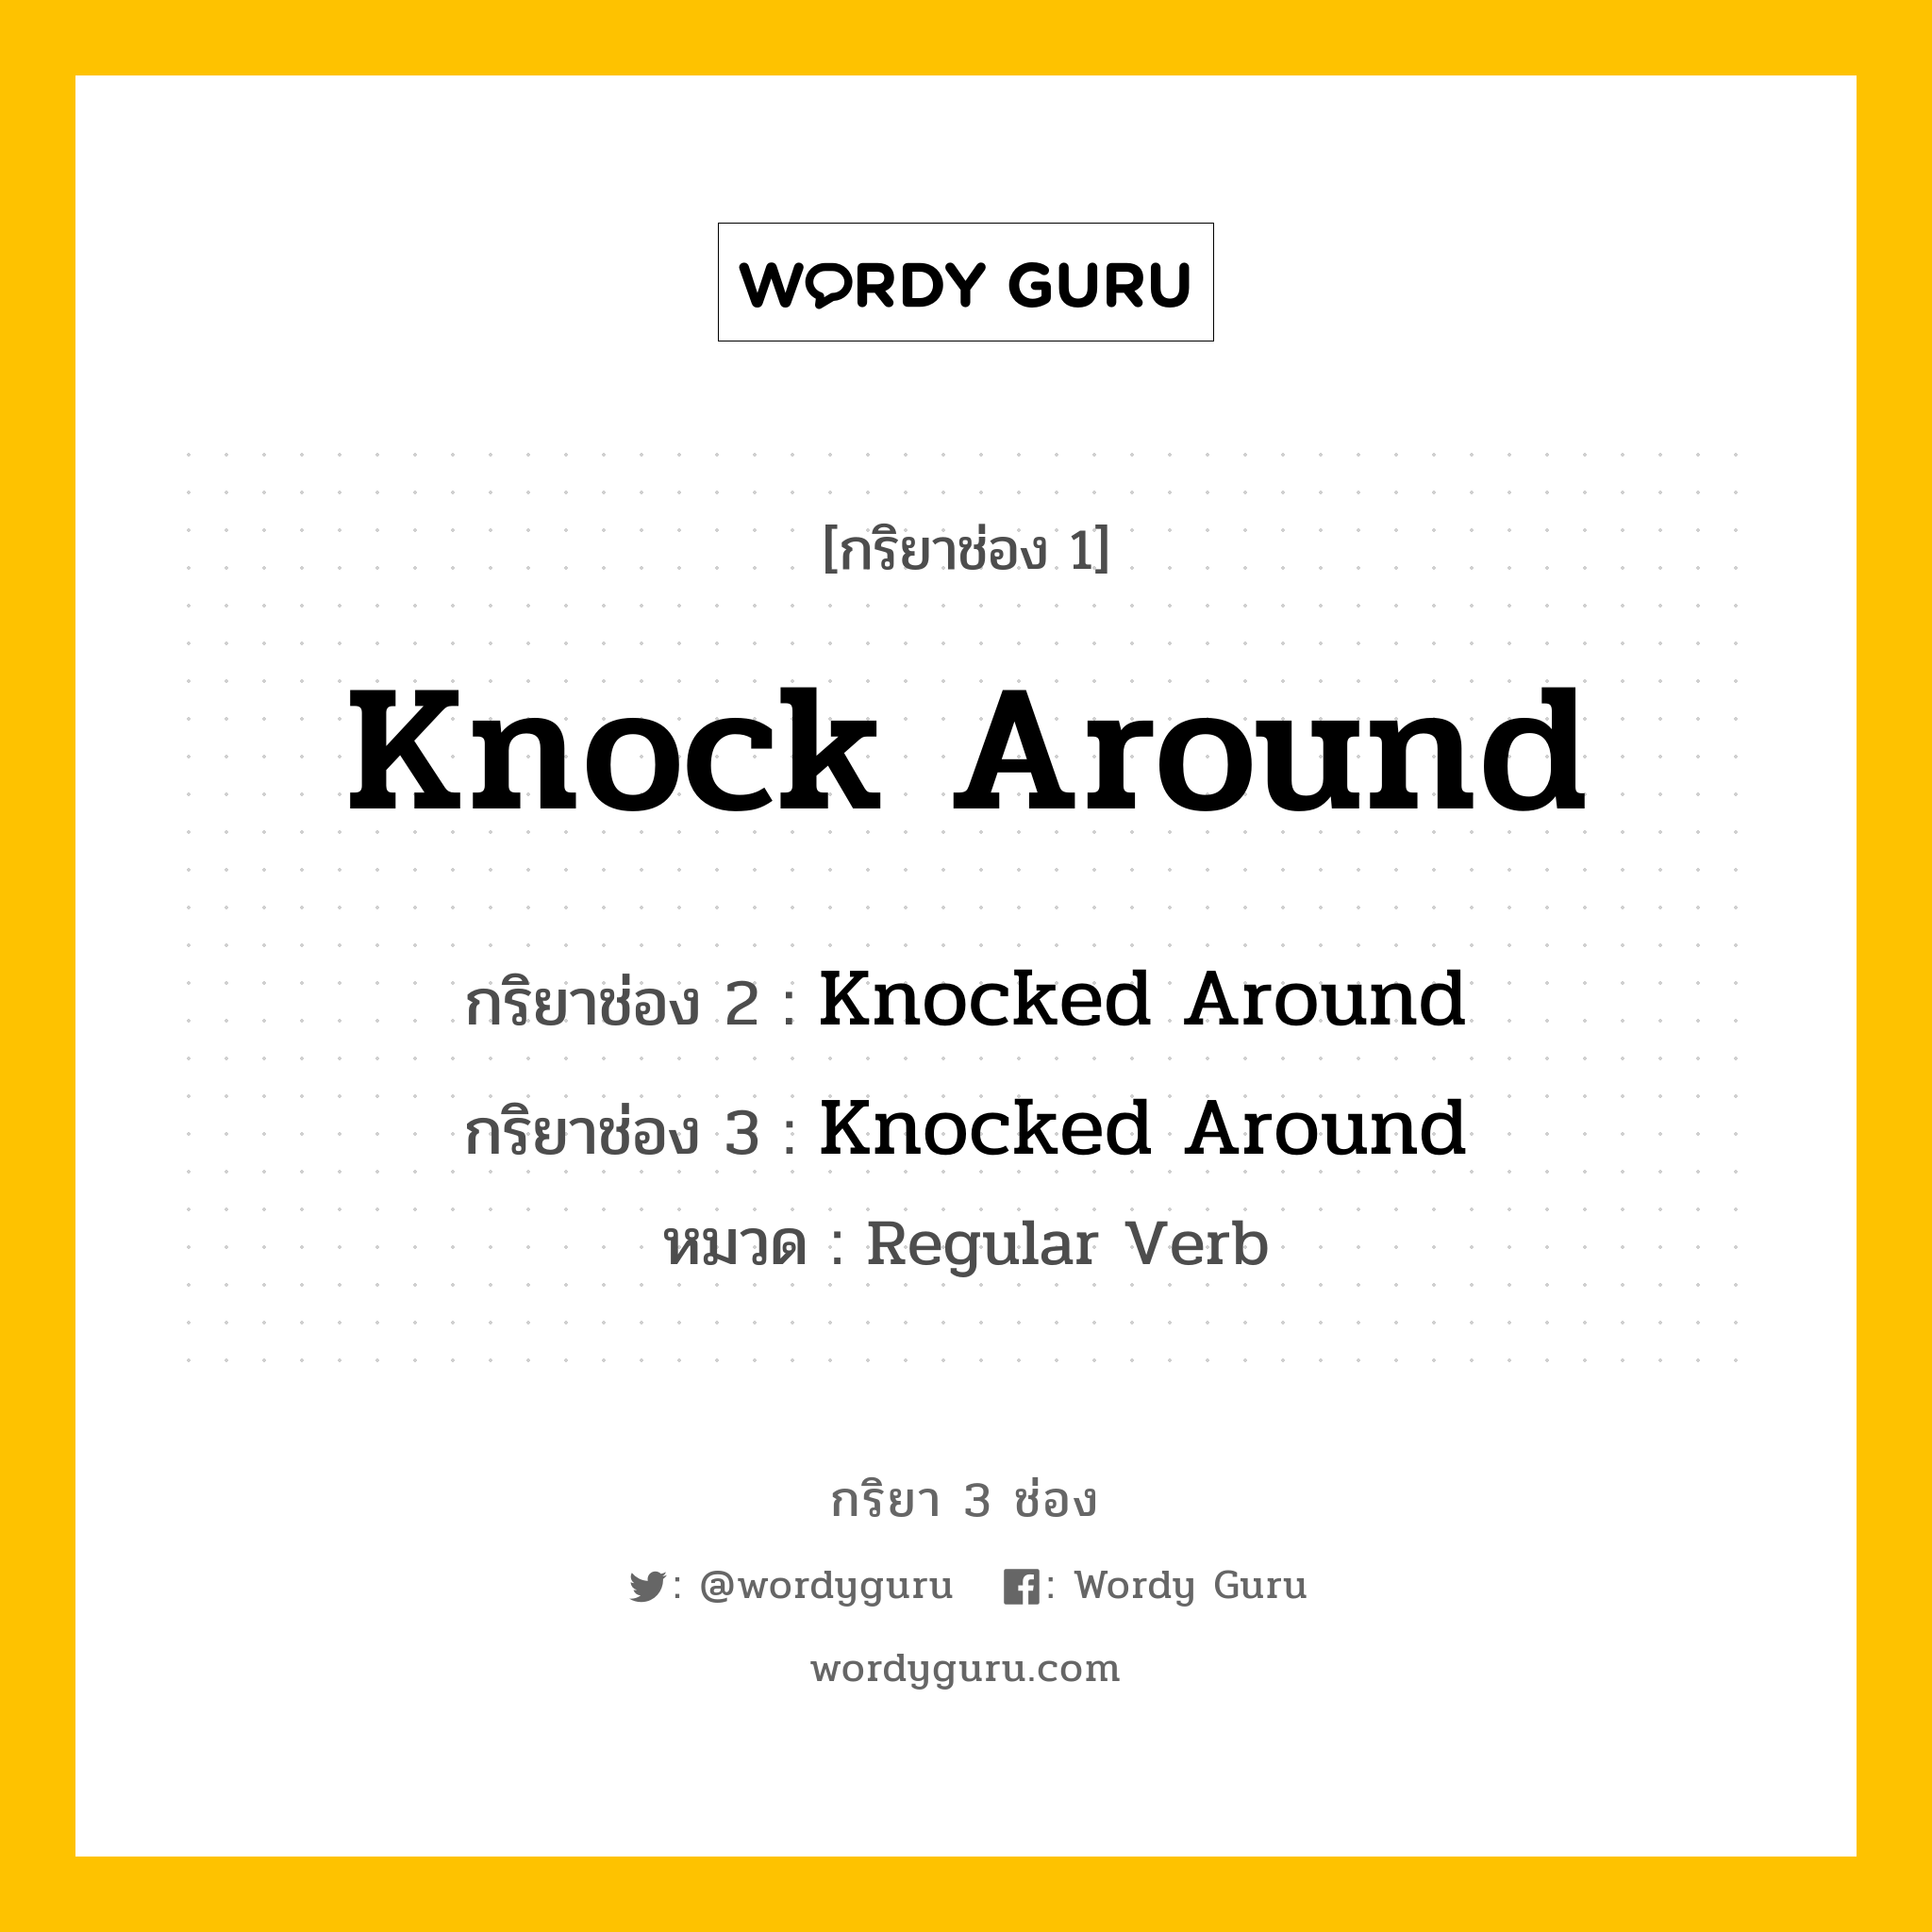 กริยา 3 ช่อง: Knock Around ช่อง 2 Knock Around ช่อง 3 คืออะไร, กริยาช่อง 1 Knock Around กริยาช่อง 2 Knocked Around กริยาช่อง 3 Knocked Around หมวด Regular Verb หมวด Regular Verb